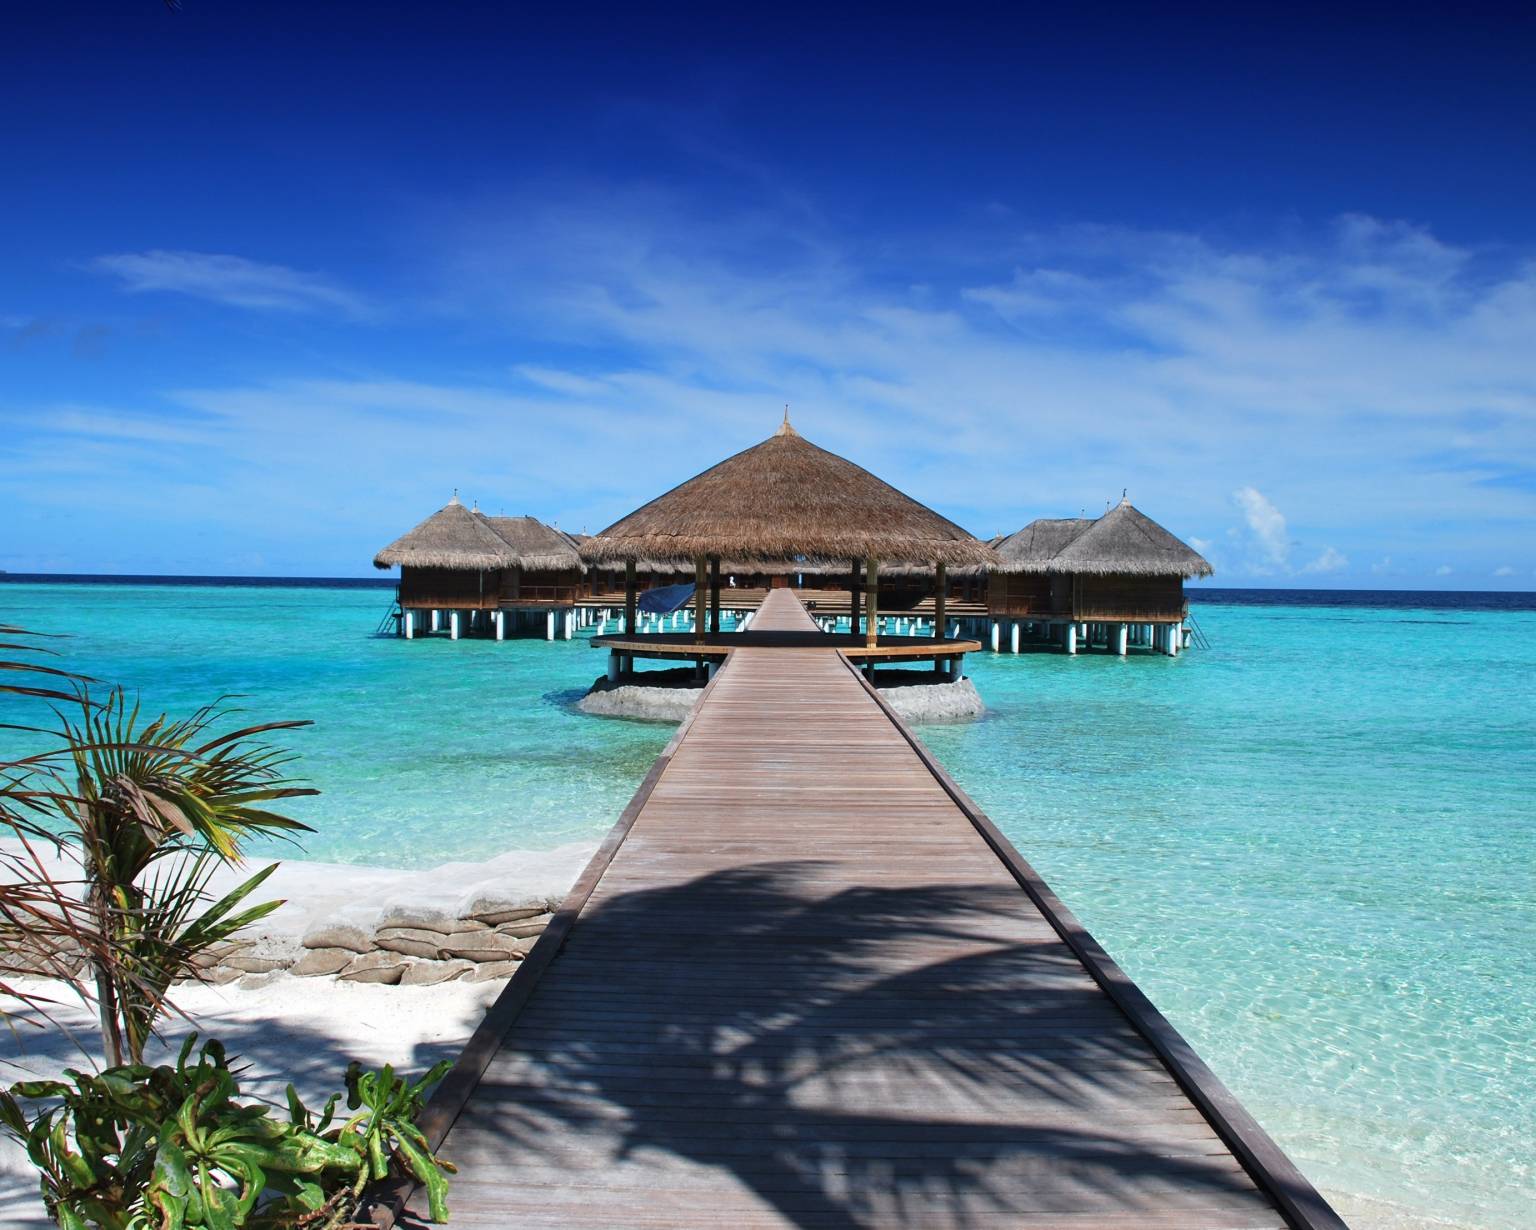 maldives tourism places images